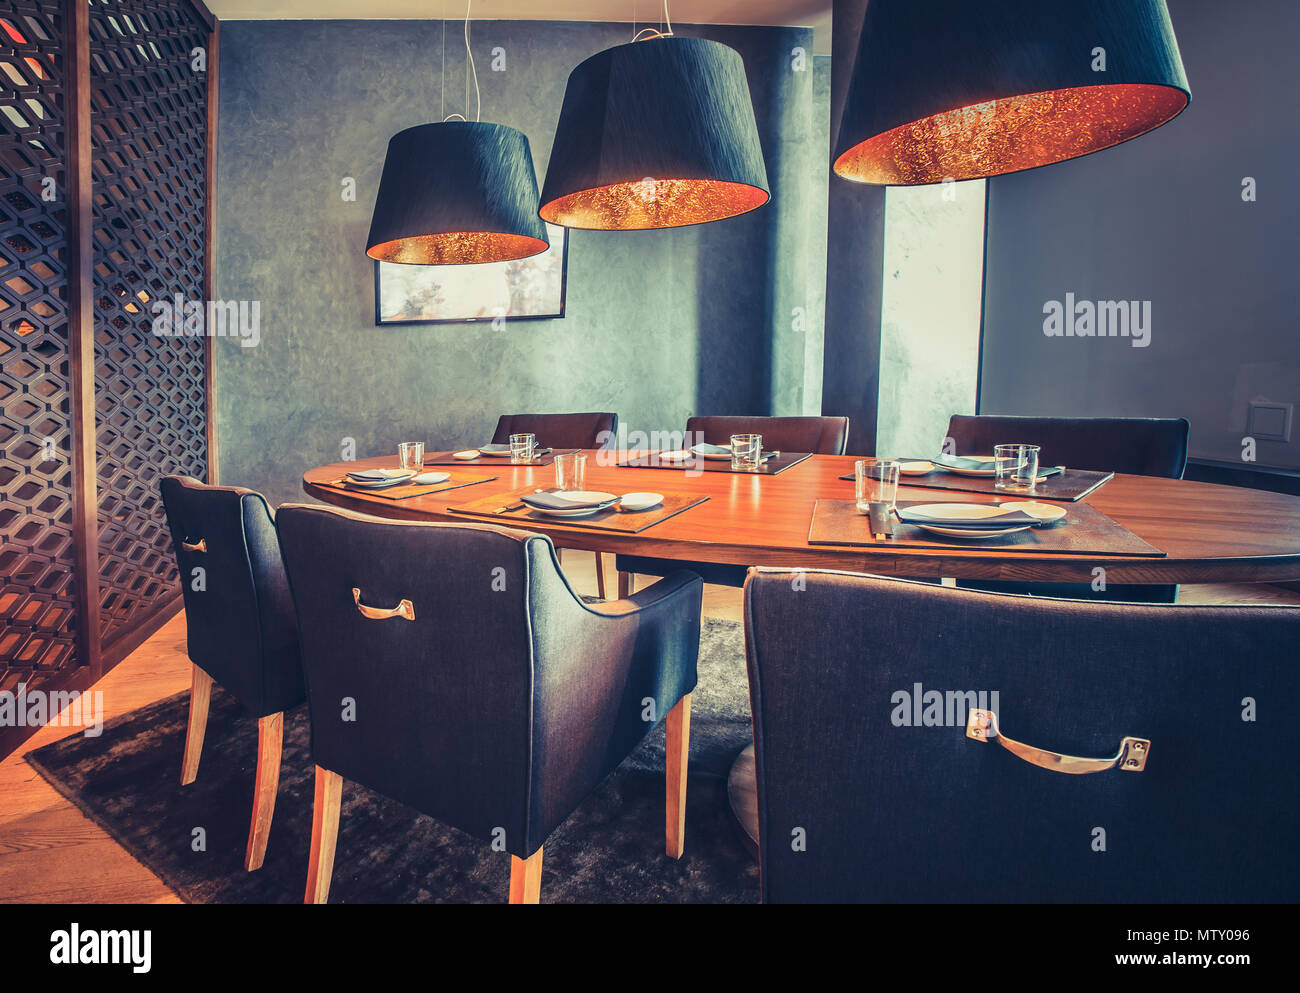 Stilvolle innen Einrichtung des mod-Restaurant. Das zeitgenössische Interieur die Holz- runder Tisch, bequeme Stühle und moderne Lampen. Exquisite Kombination der Royal Blau- und Orangetönen. Stockfoto